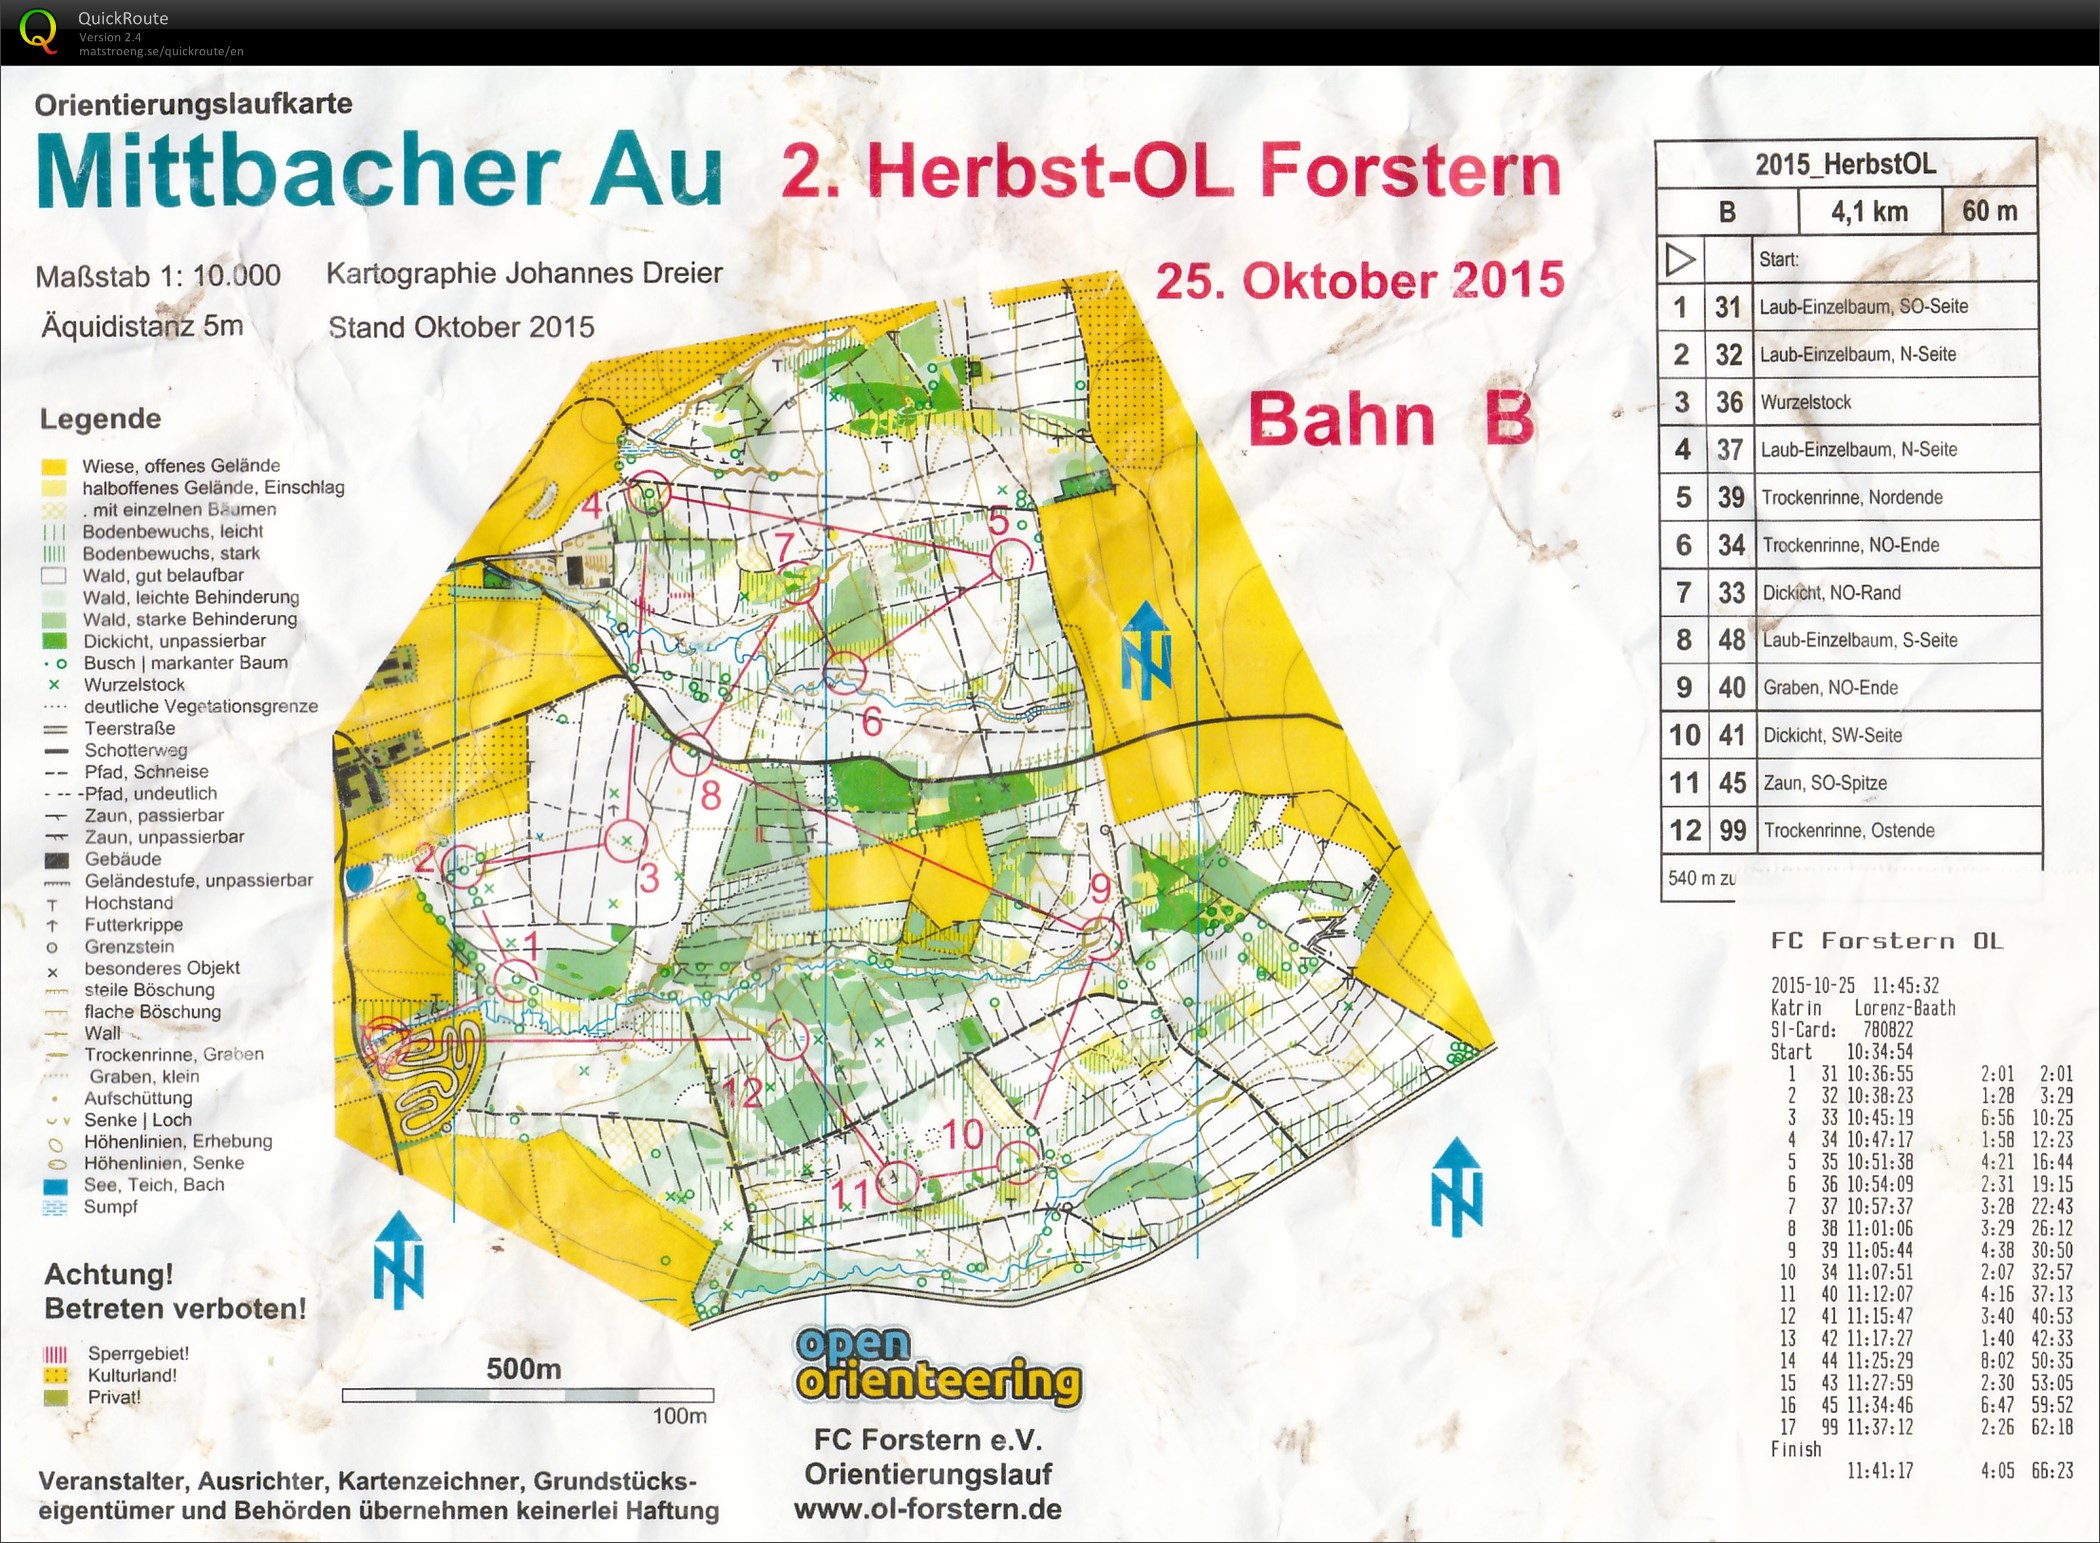 Herbst-OL Forstern (25.10.2015)